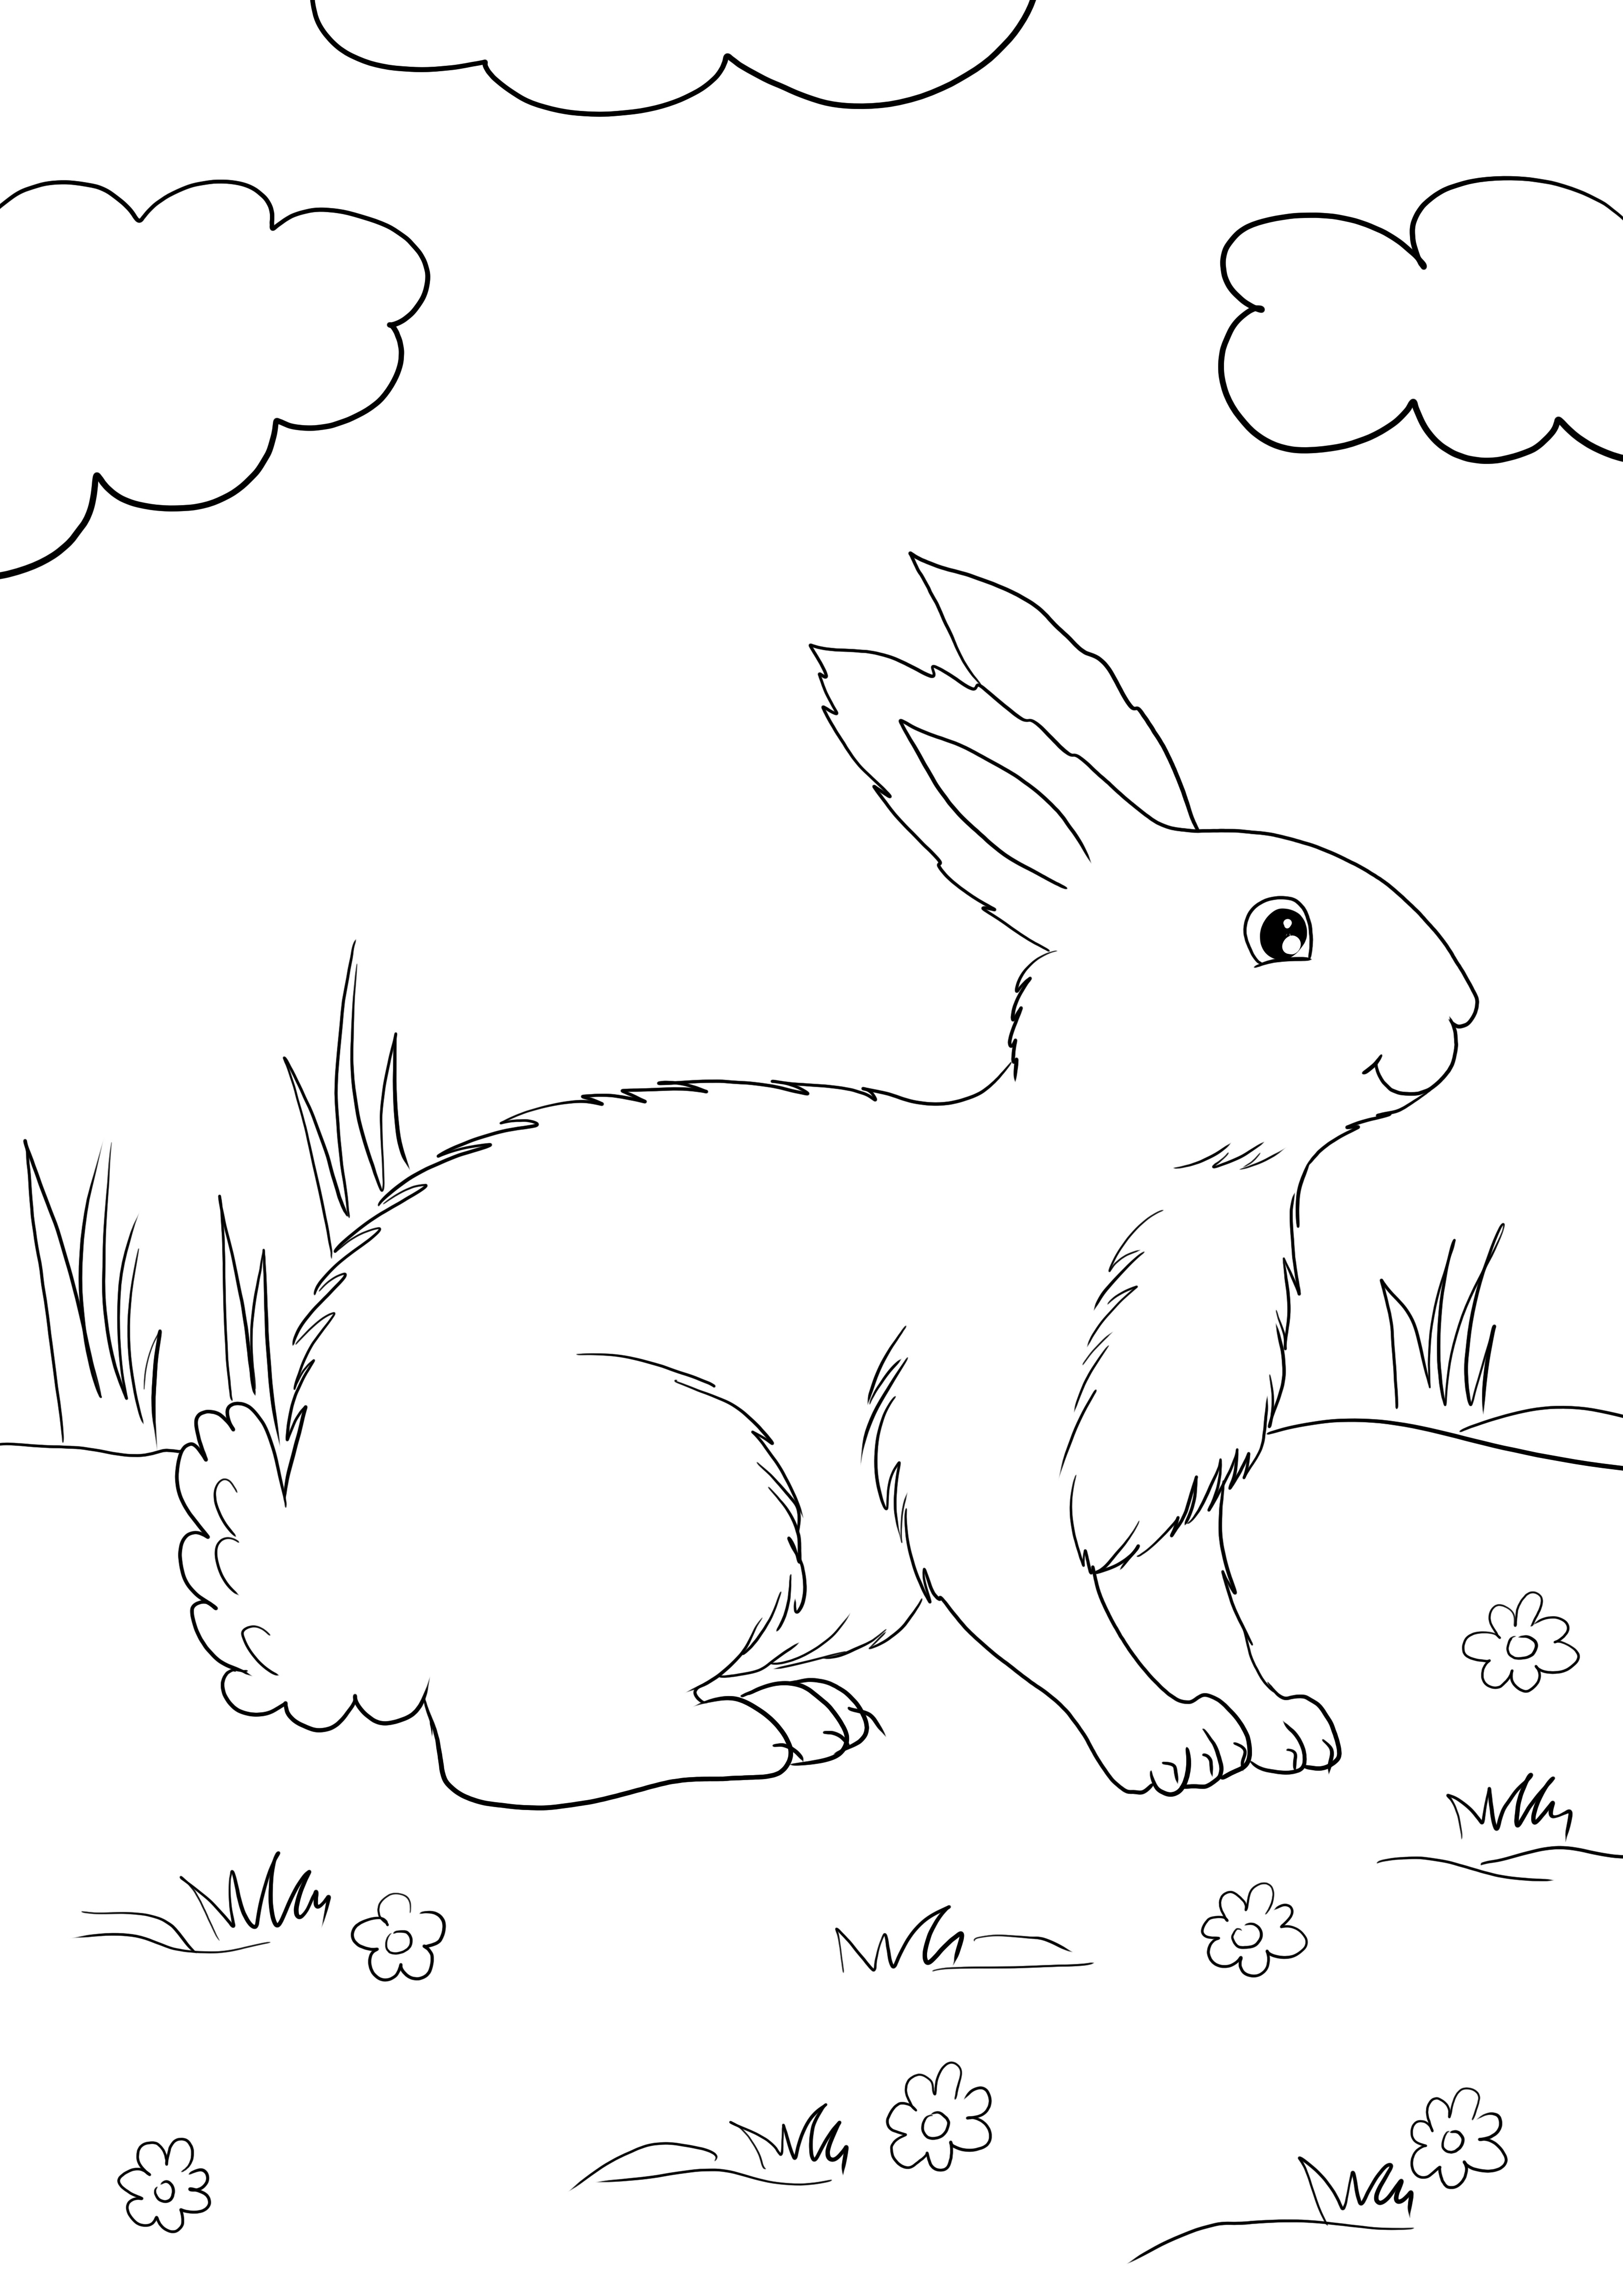 Sevimli Beyaz Tavşan ücretsiz yazdırması ve boyaması ve tavşanlar hakkında bilgi edinmesi kolay